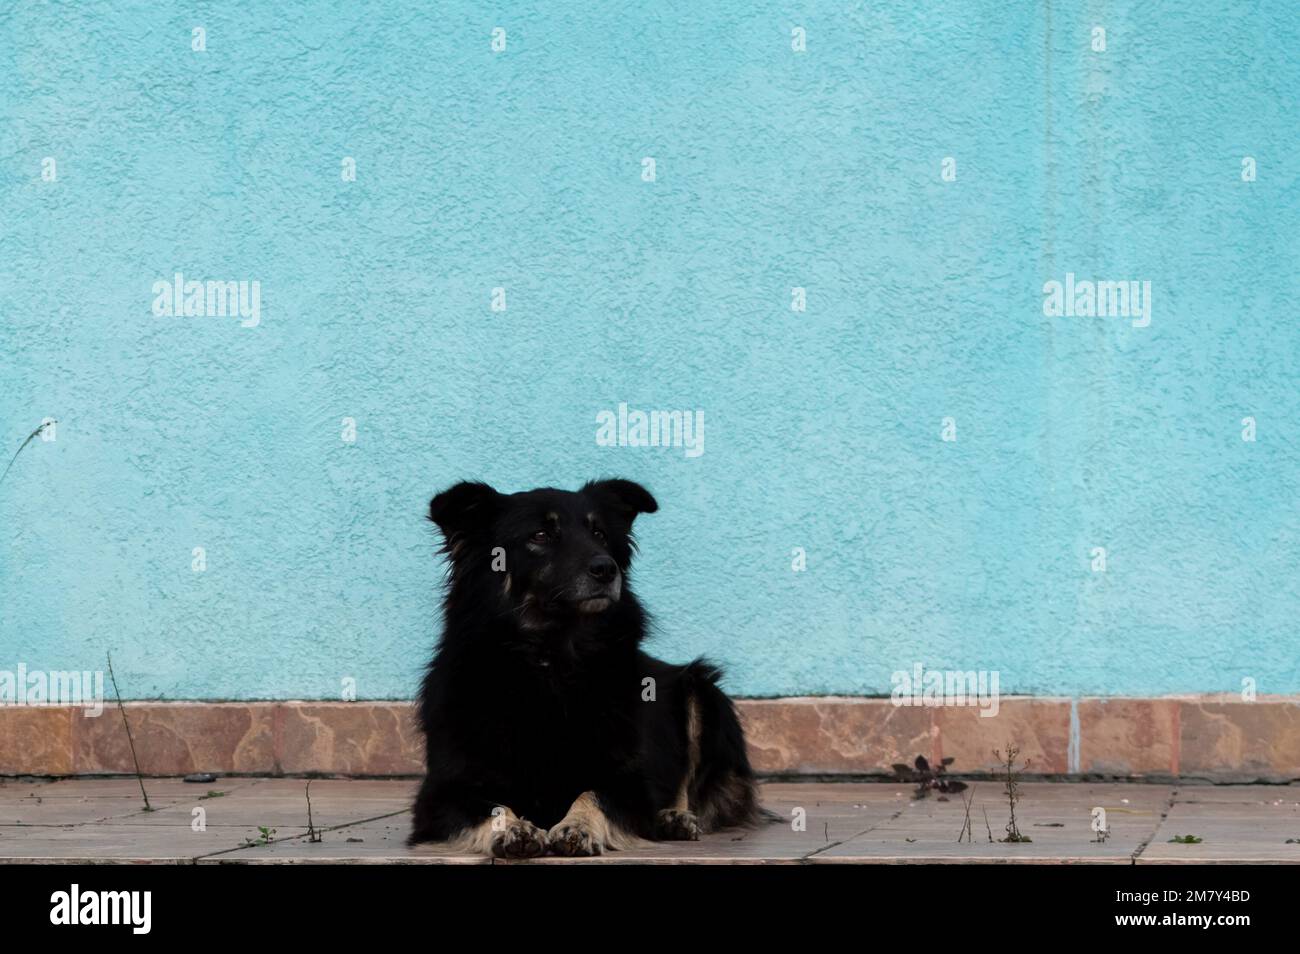 Ritratto di un grande cane shaggy nero sullo sfondo di un muro azzurro in openair Foto Stock